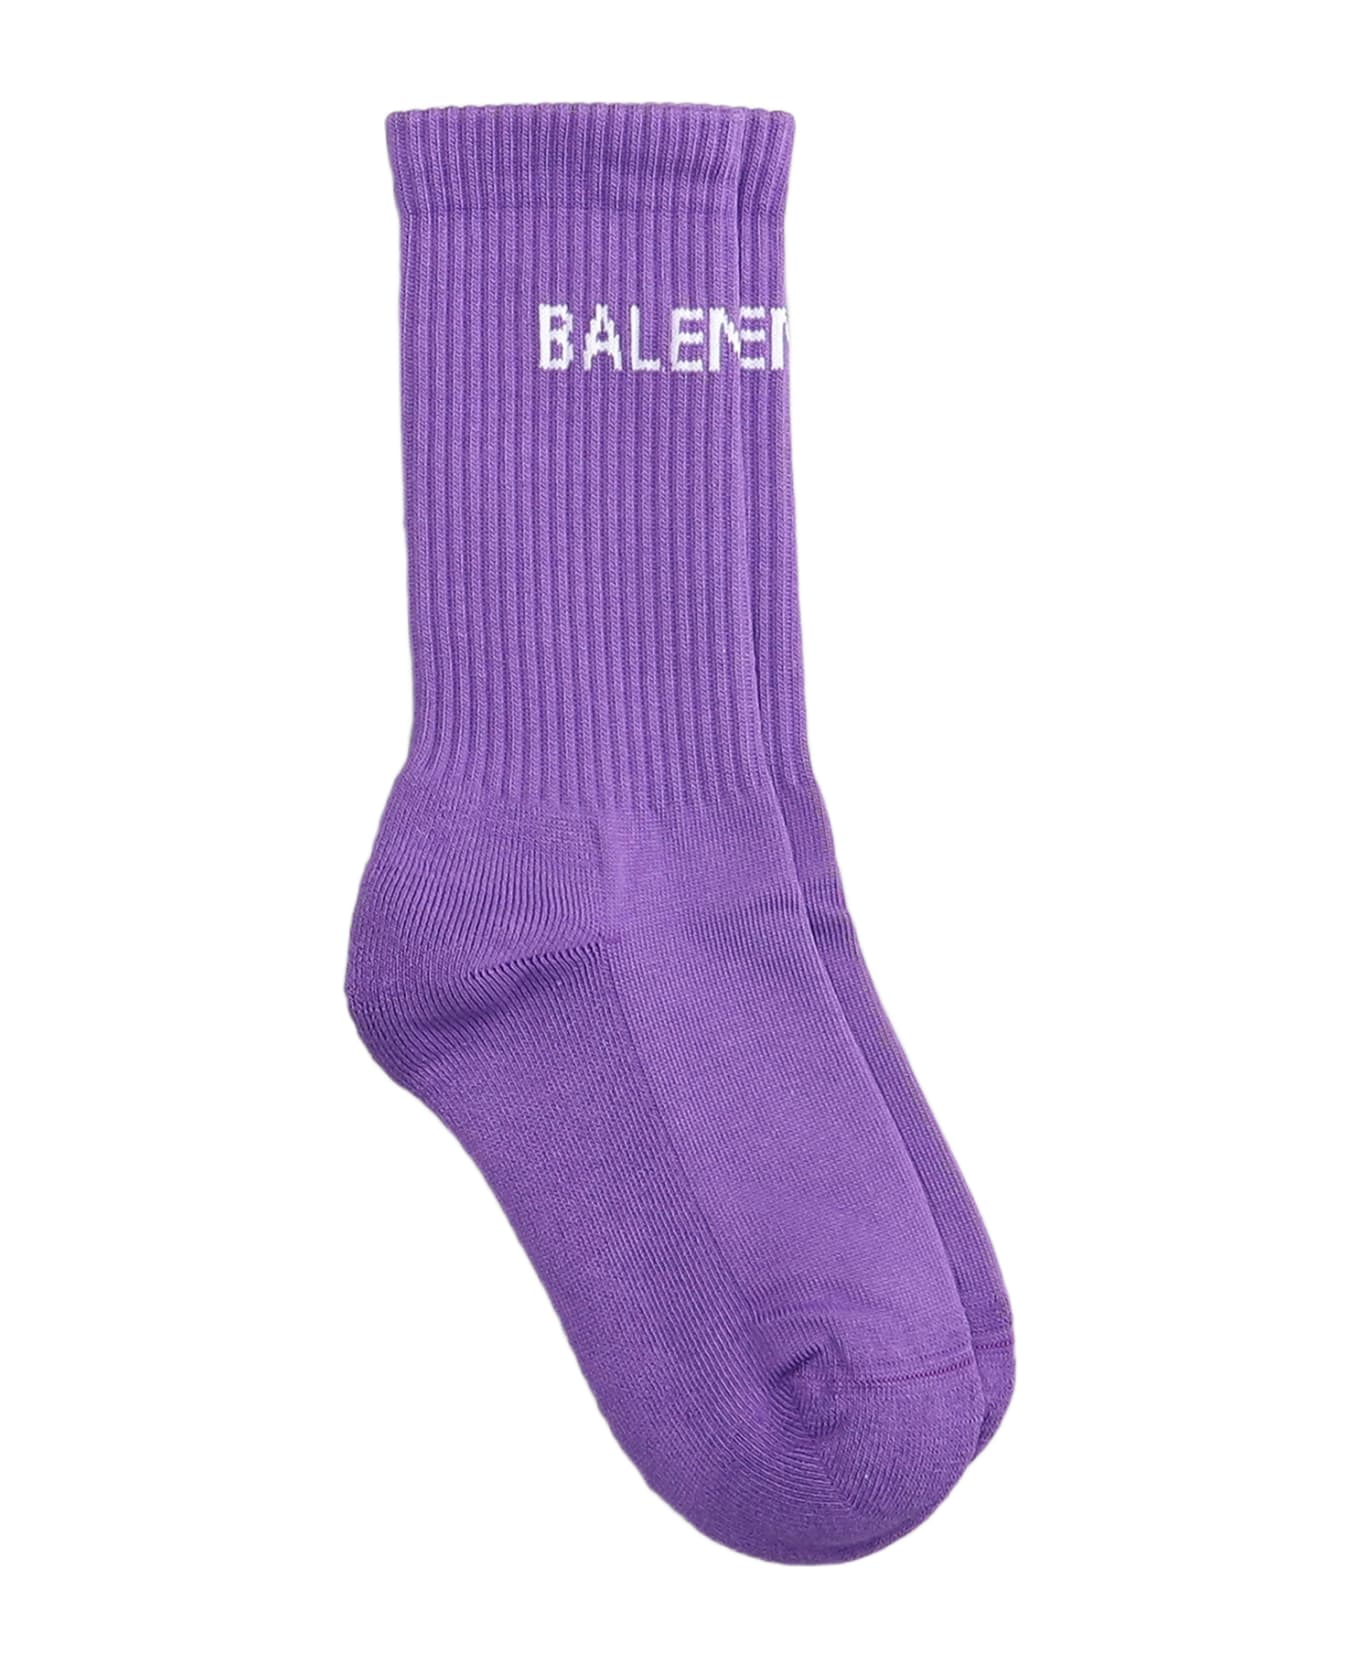 Balenciaga Socks In Viola Cotton - Viola